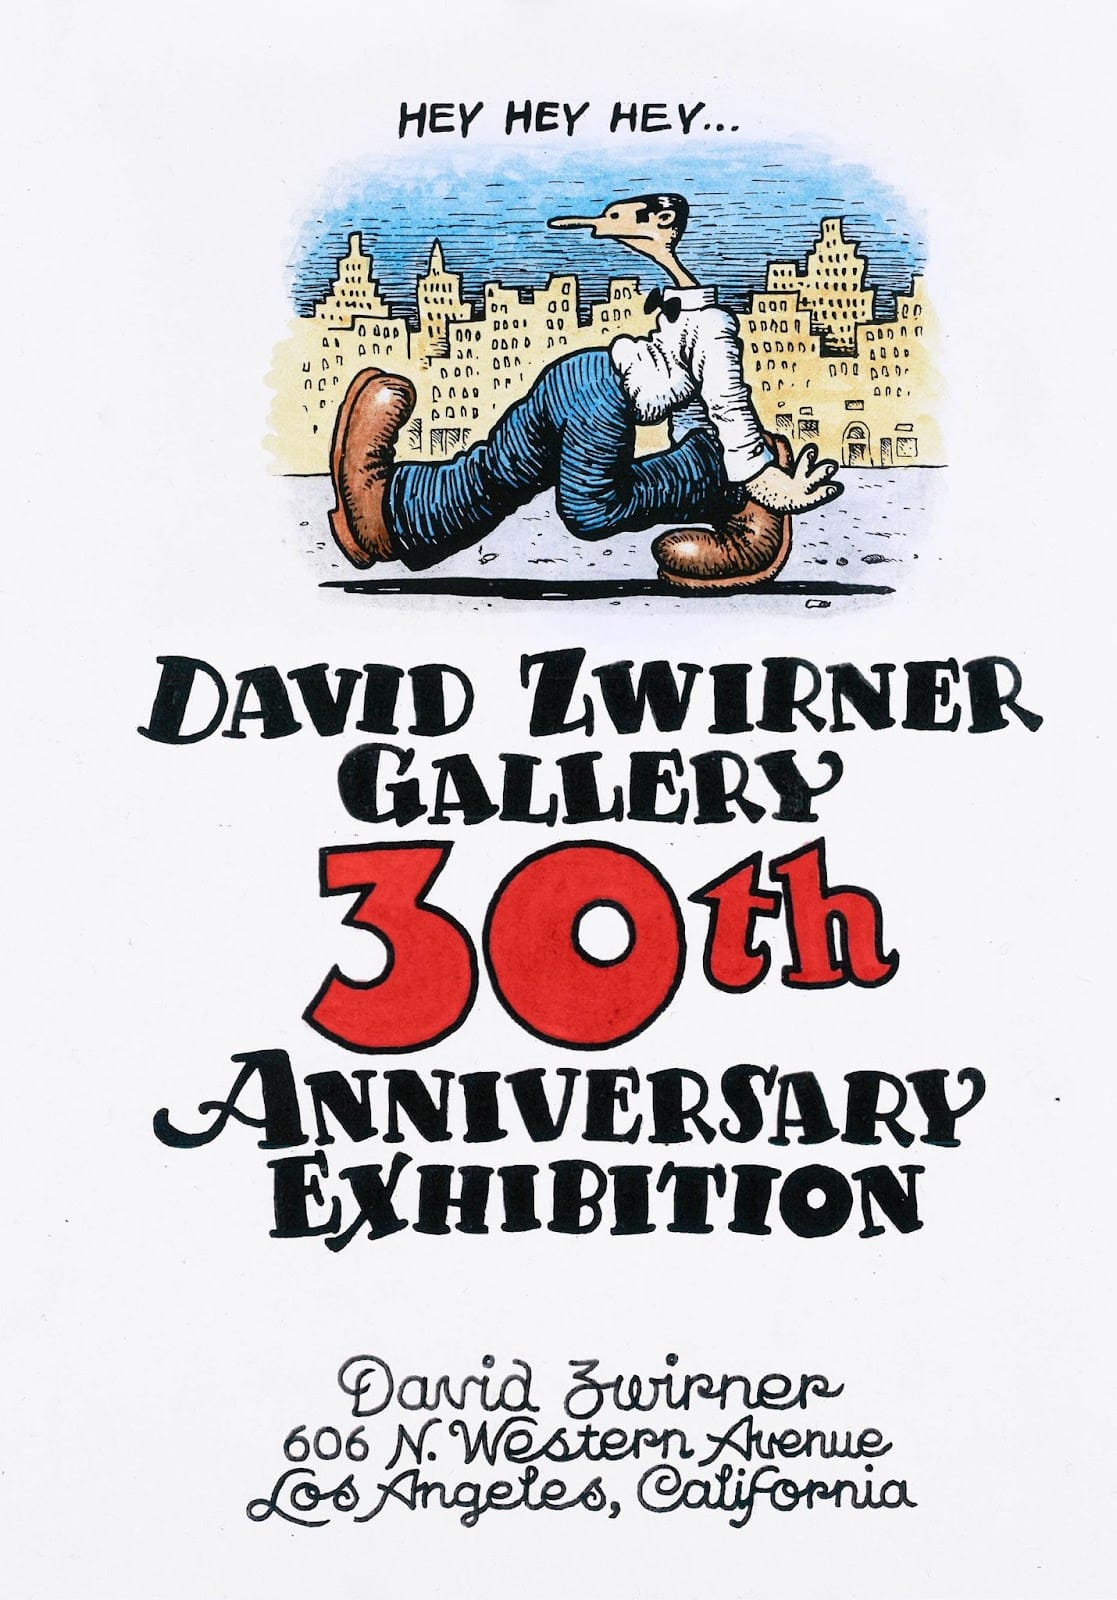 David Zwirner celebra 30 anni con l'apertura della nuova galleria flagship di Los Angeles e una mostra inaugurale